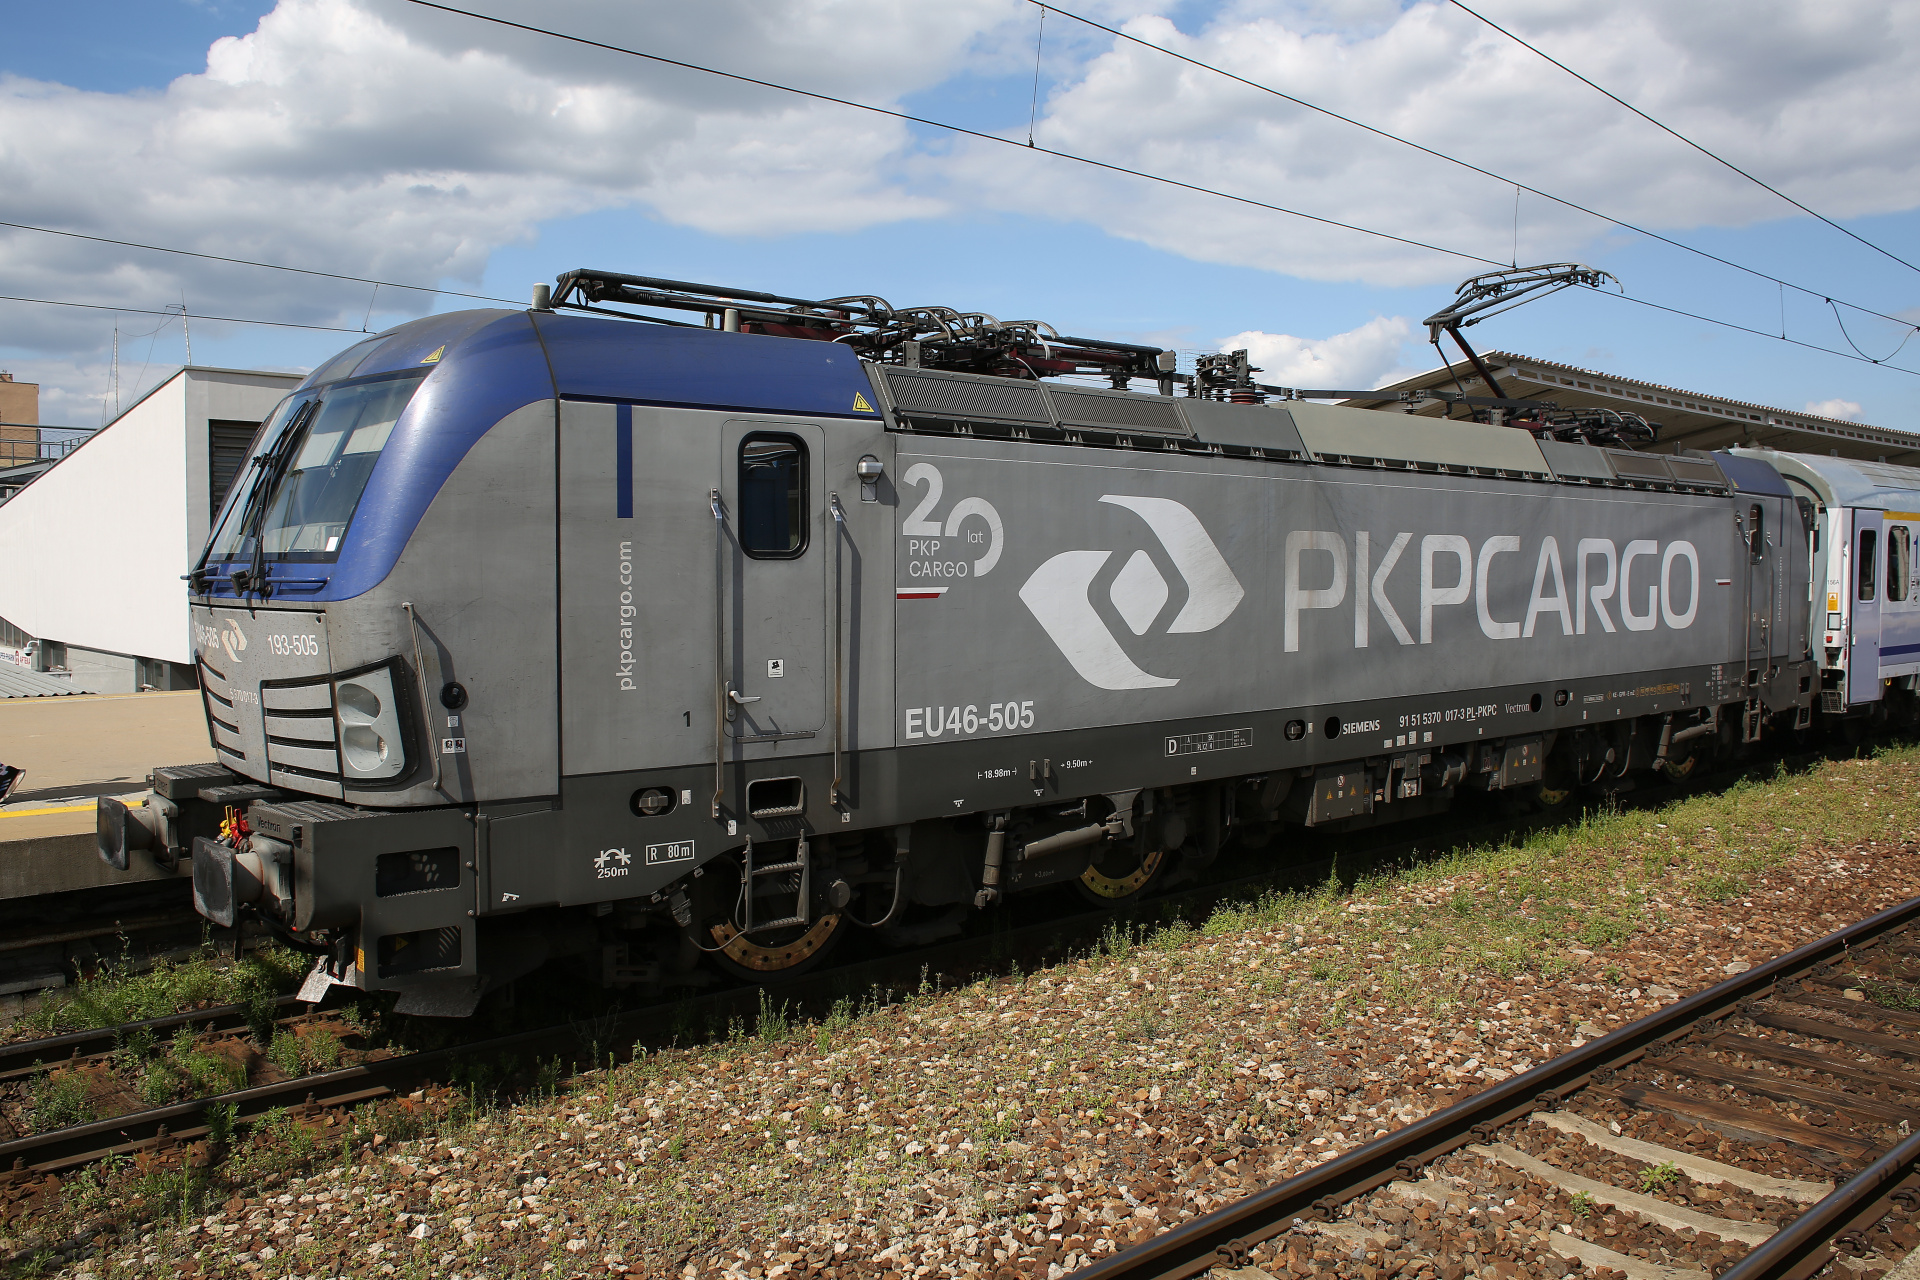 X4-E-Loco-AB Vectron MS EU46-505 193-505 (naklejka 20 lat PKP Cargo) (Pojazdy » Pociągi i lokomotywy » Siemens Vectron)